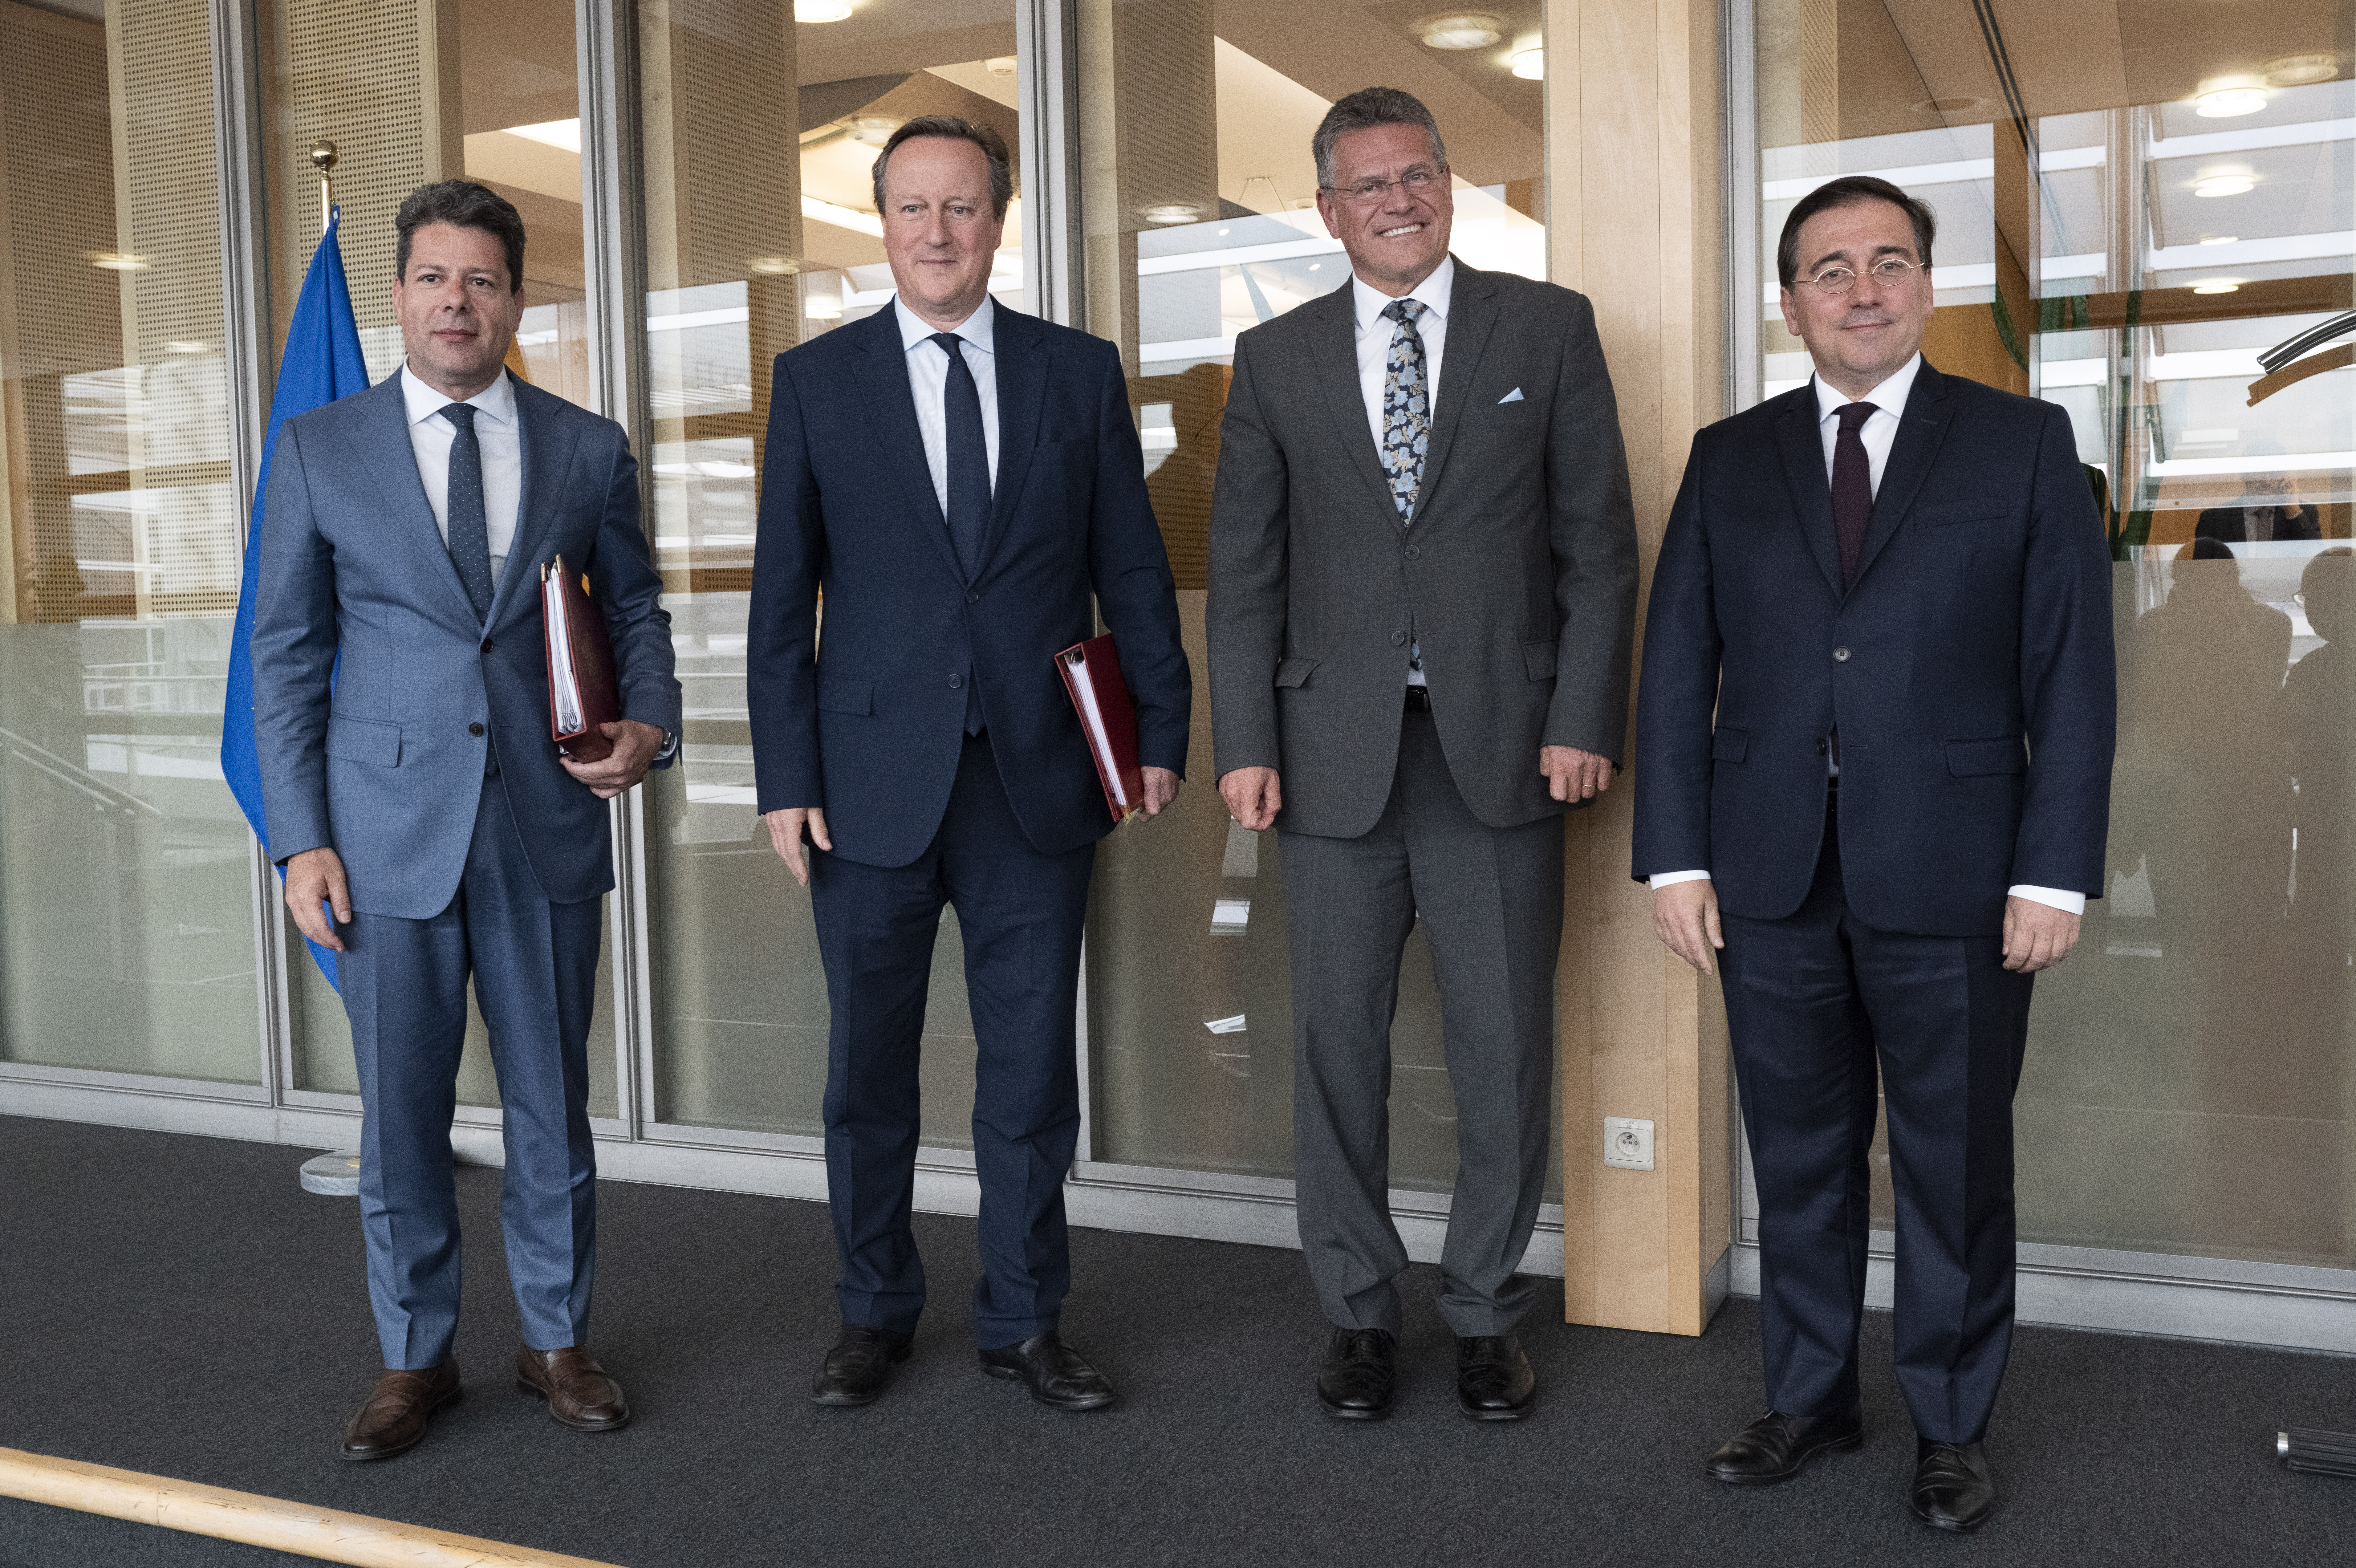 Fabian Picardo, David Cameron, Maros Sefcovic e José Manuel Albares. Comisión Europea